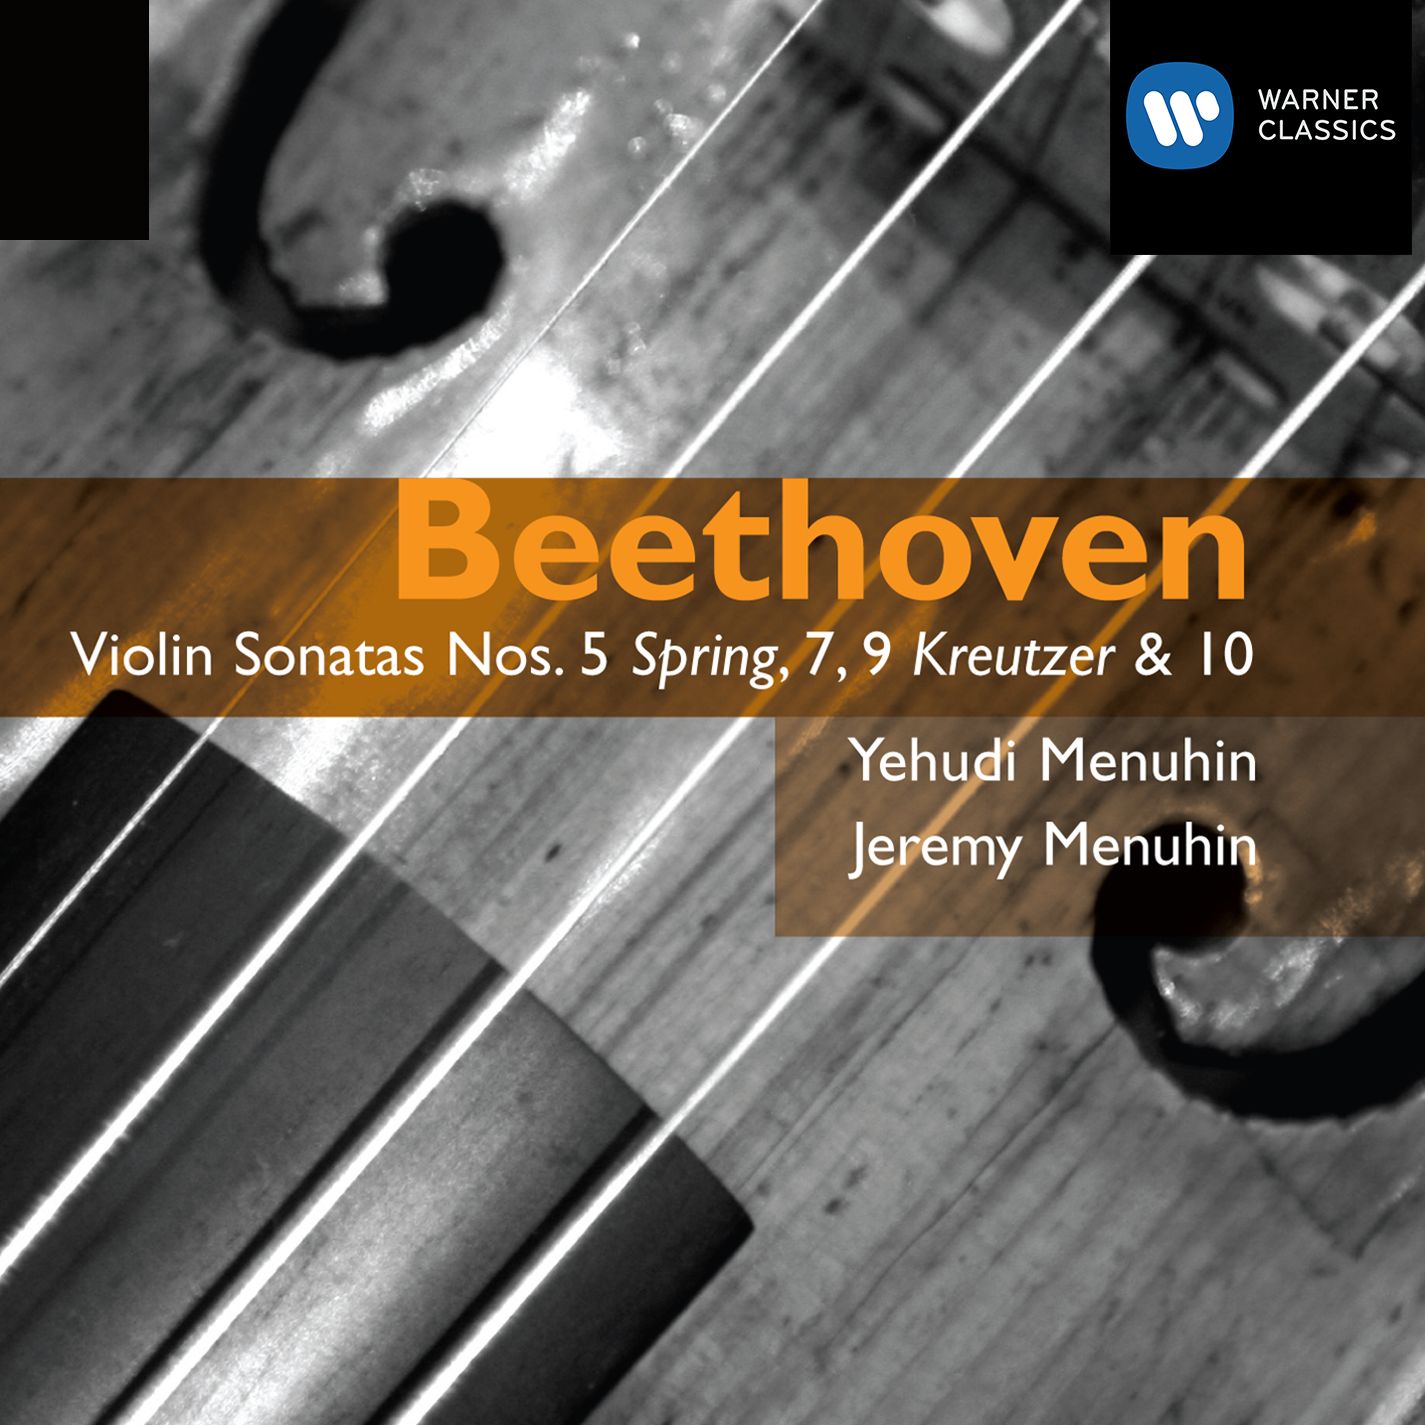 Violin Sonata No. 10 in G Major, Op. 96:I. Allegro moderato